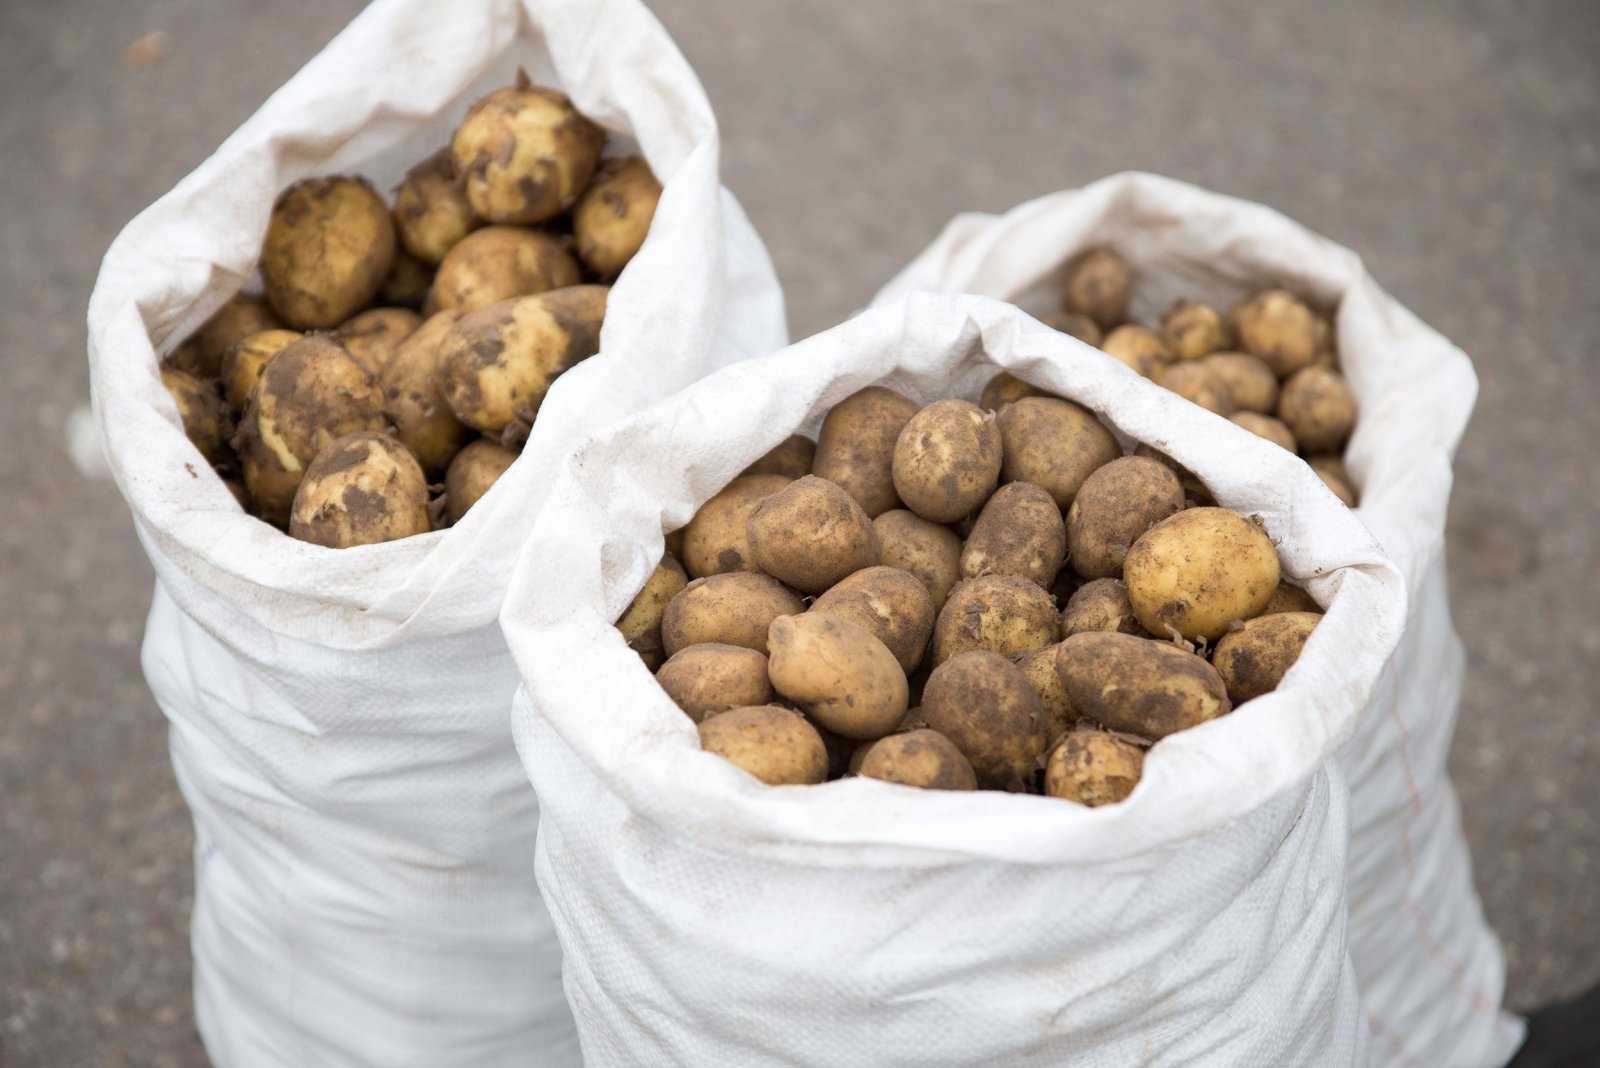 Madam circulation behind Kokios bulvių, medaus ir baravykų kainos provincijos turguje – vilniečius  tai gali šokiruoti - DELFI Agro